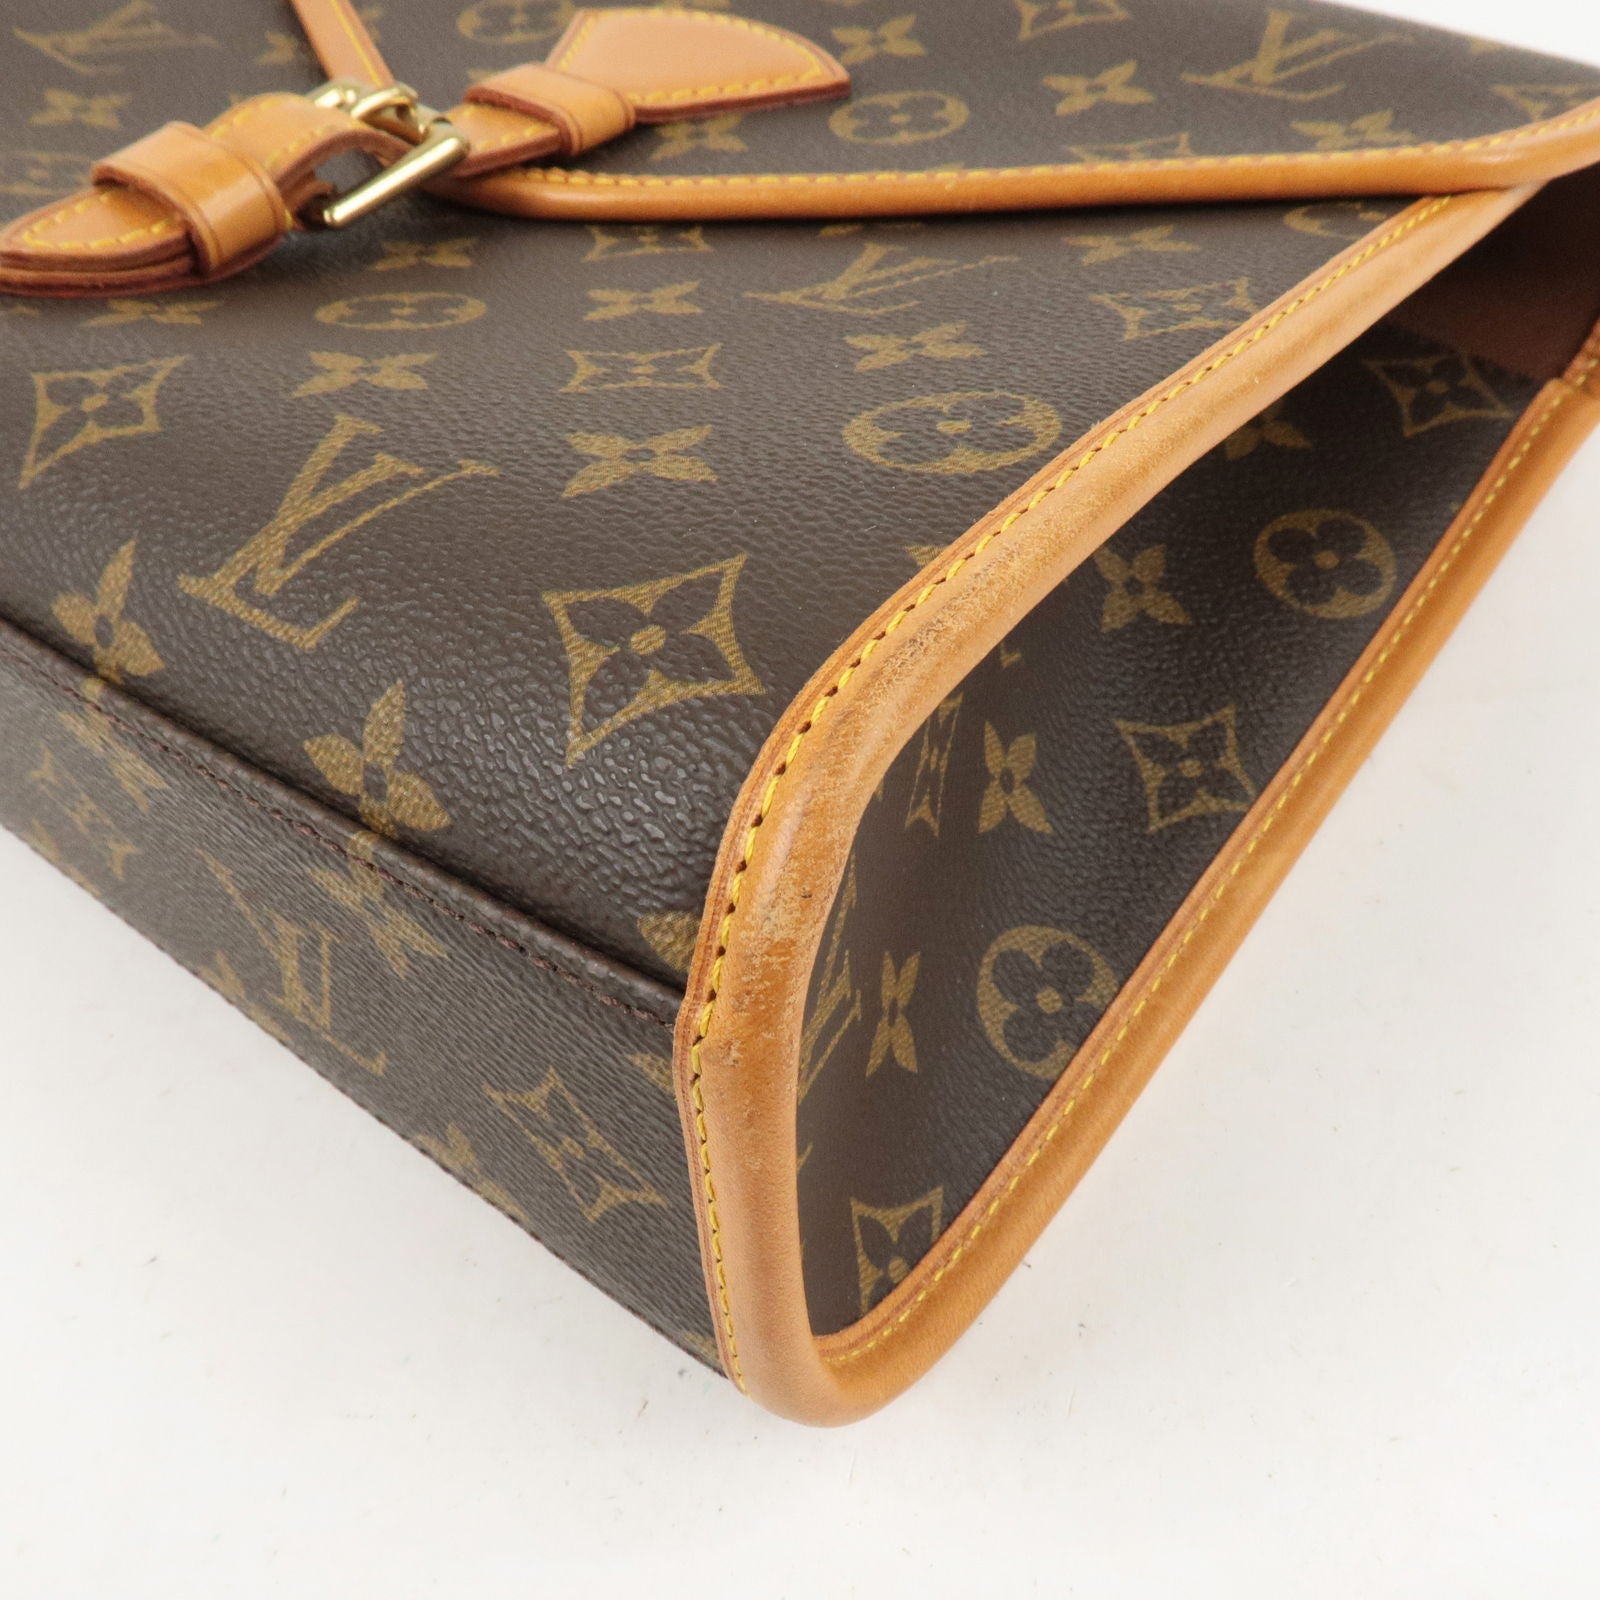 Authentic Louis Vuitton Bel Air PM 2 Way Monogram Shoulder Bag